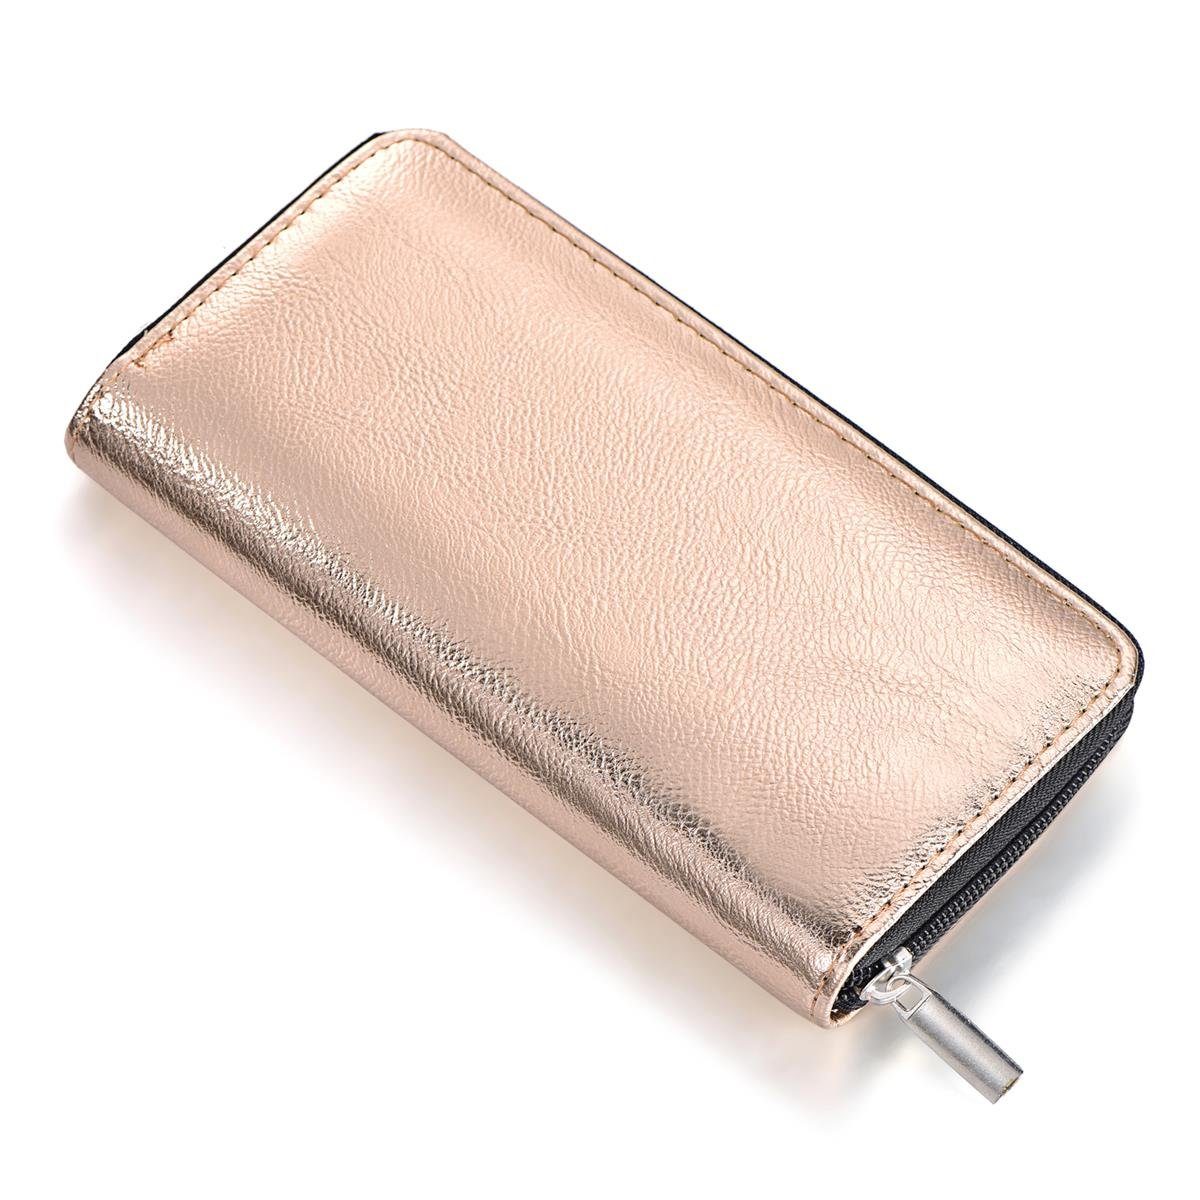 DonDon Geldbörse Portemonnaie Geldbeutel weich 20 x 10 x 2,5 cm (Packung, 1-tlg), Geldbörse für Damen und Mädchen, Metallic-Look, mit Reißverschluss rosé metallic